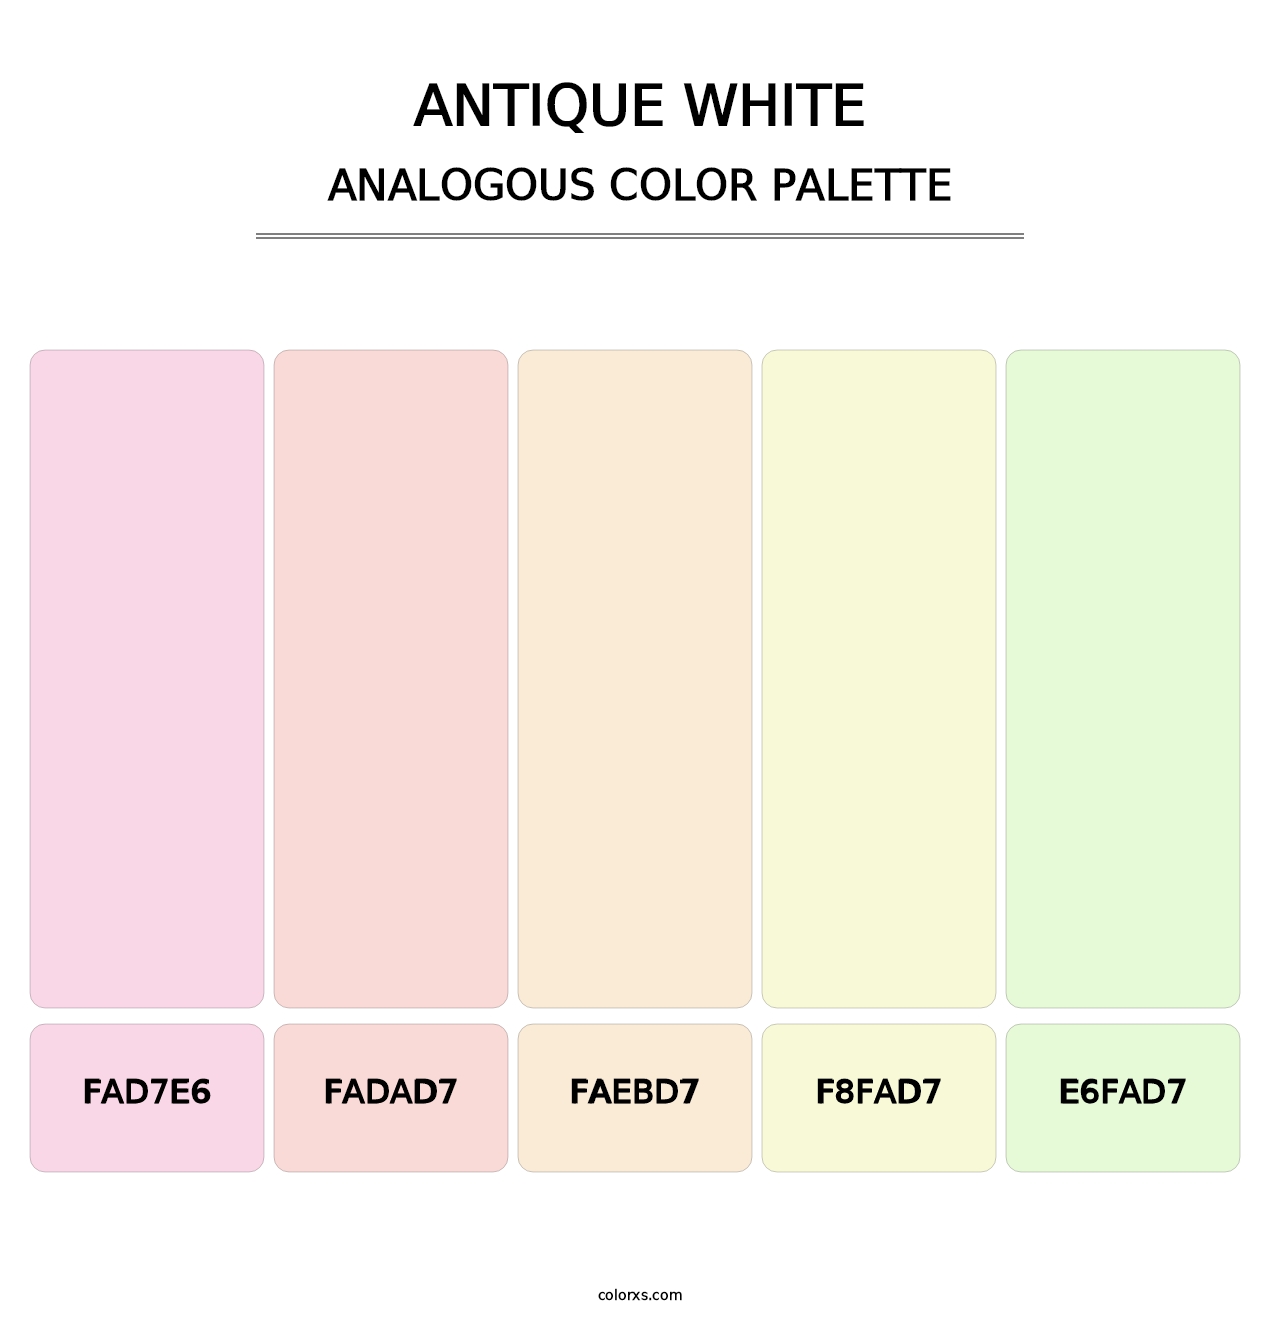 Antique White - Analogous Color Palette